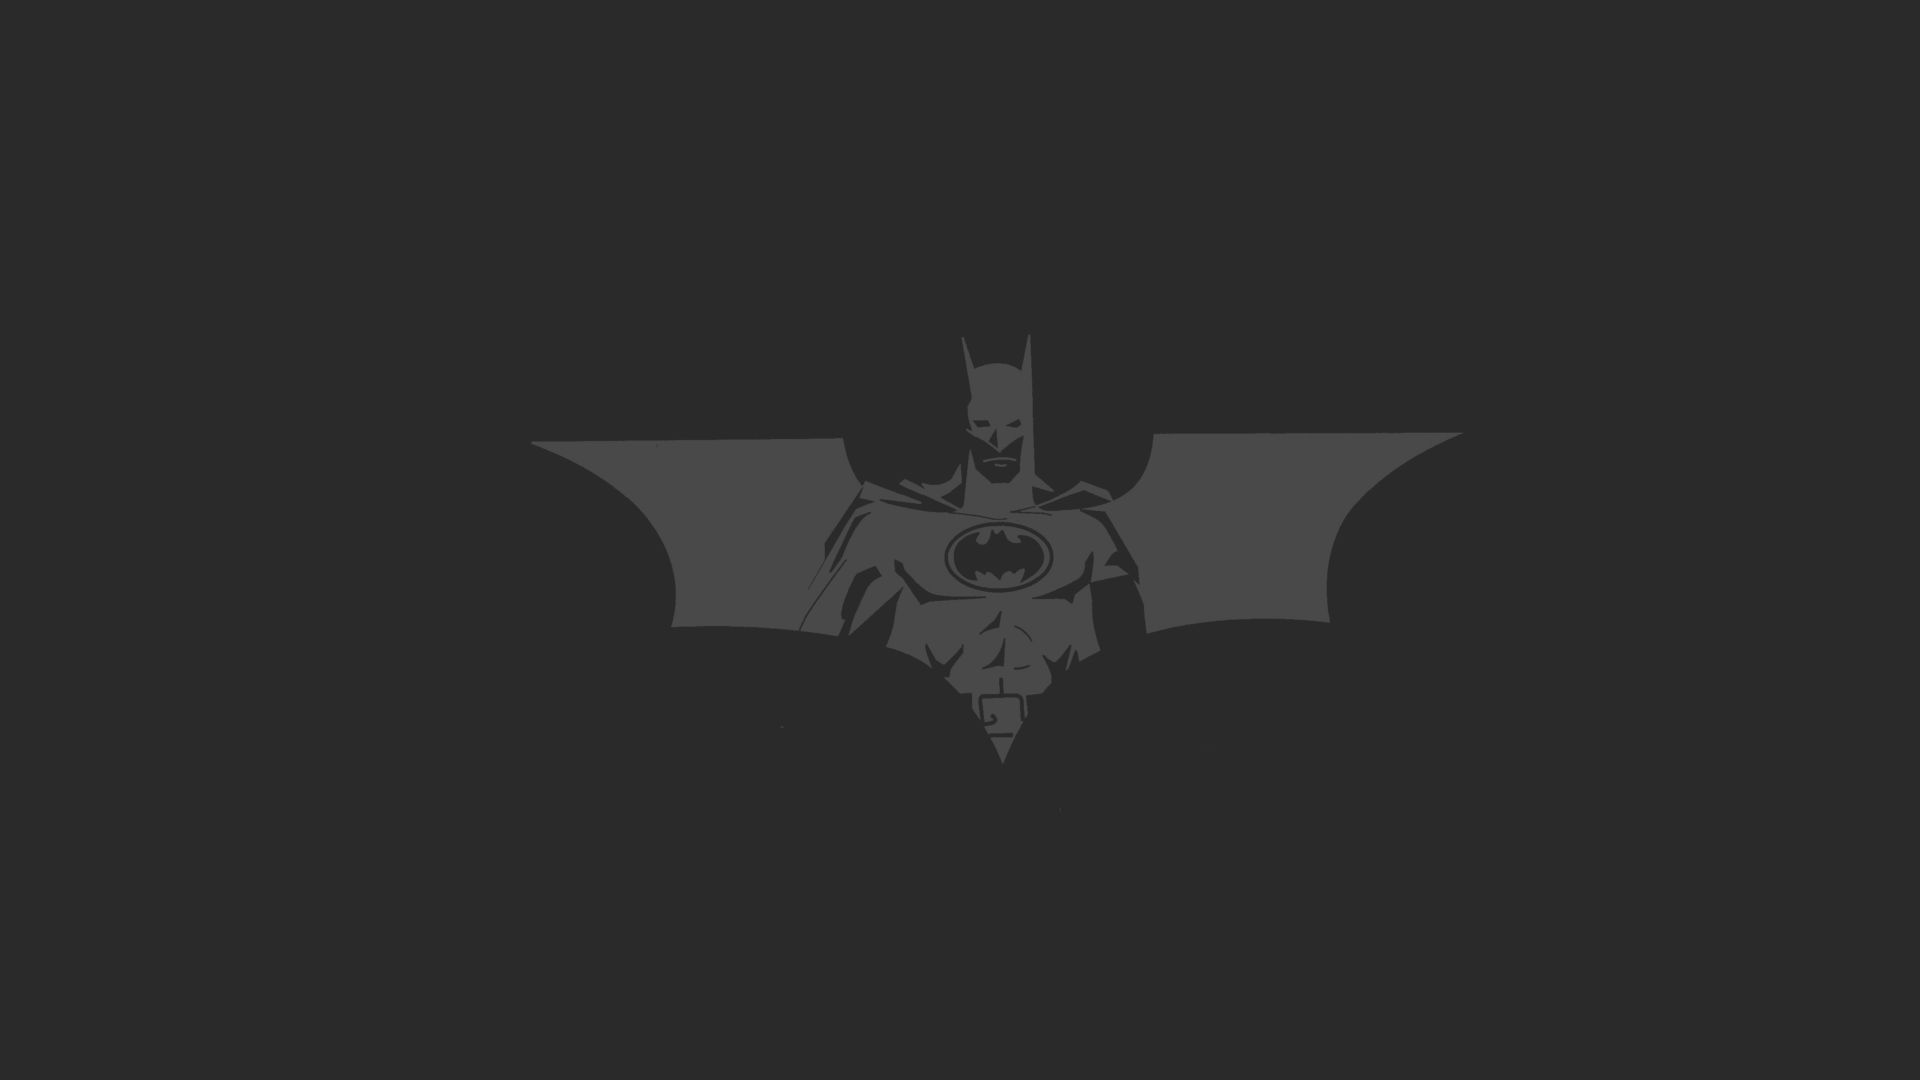 Free download wallpaper Batman, Comics, Batman Logo, Batman Symbol on your PC desktop